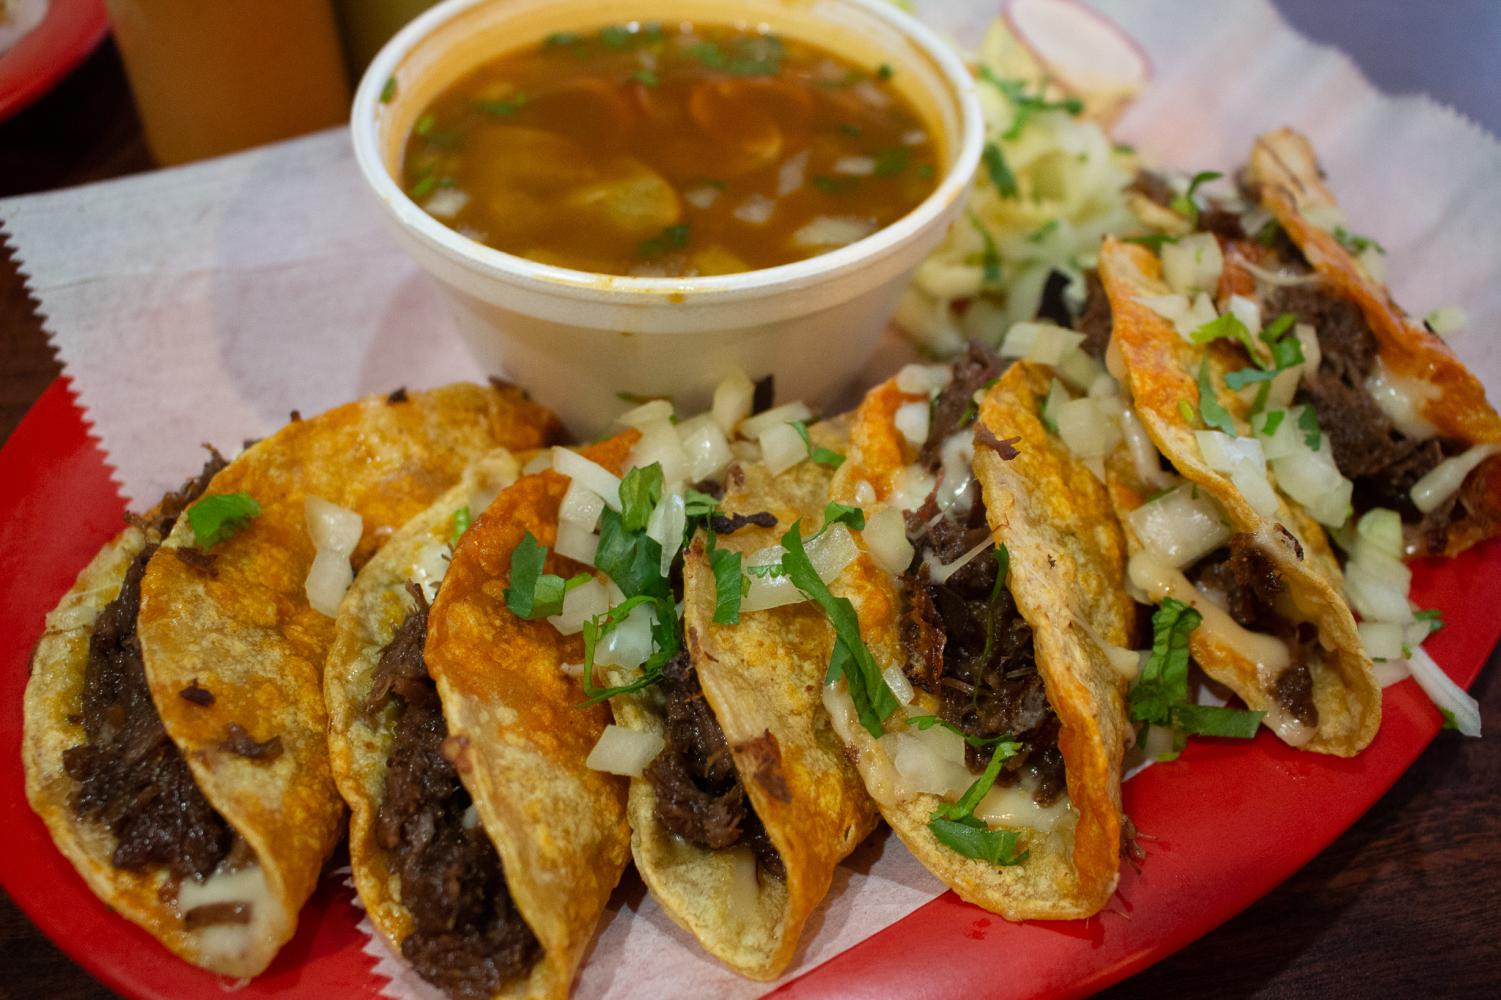 Spec-taco-lar birria tacos – Sequoit Media